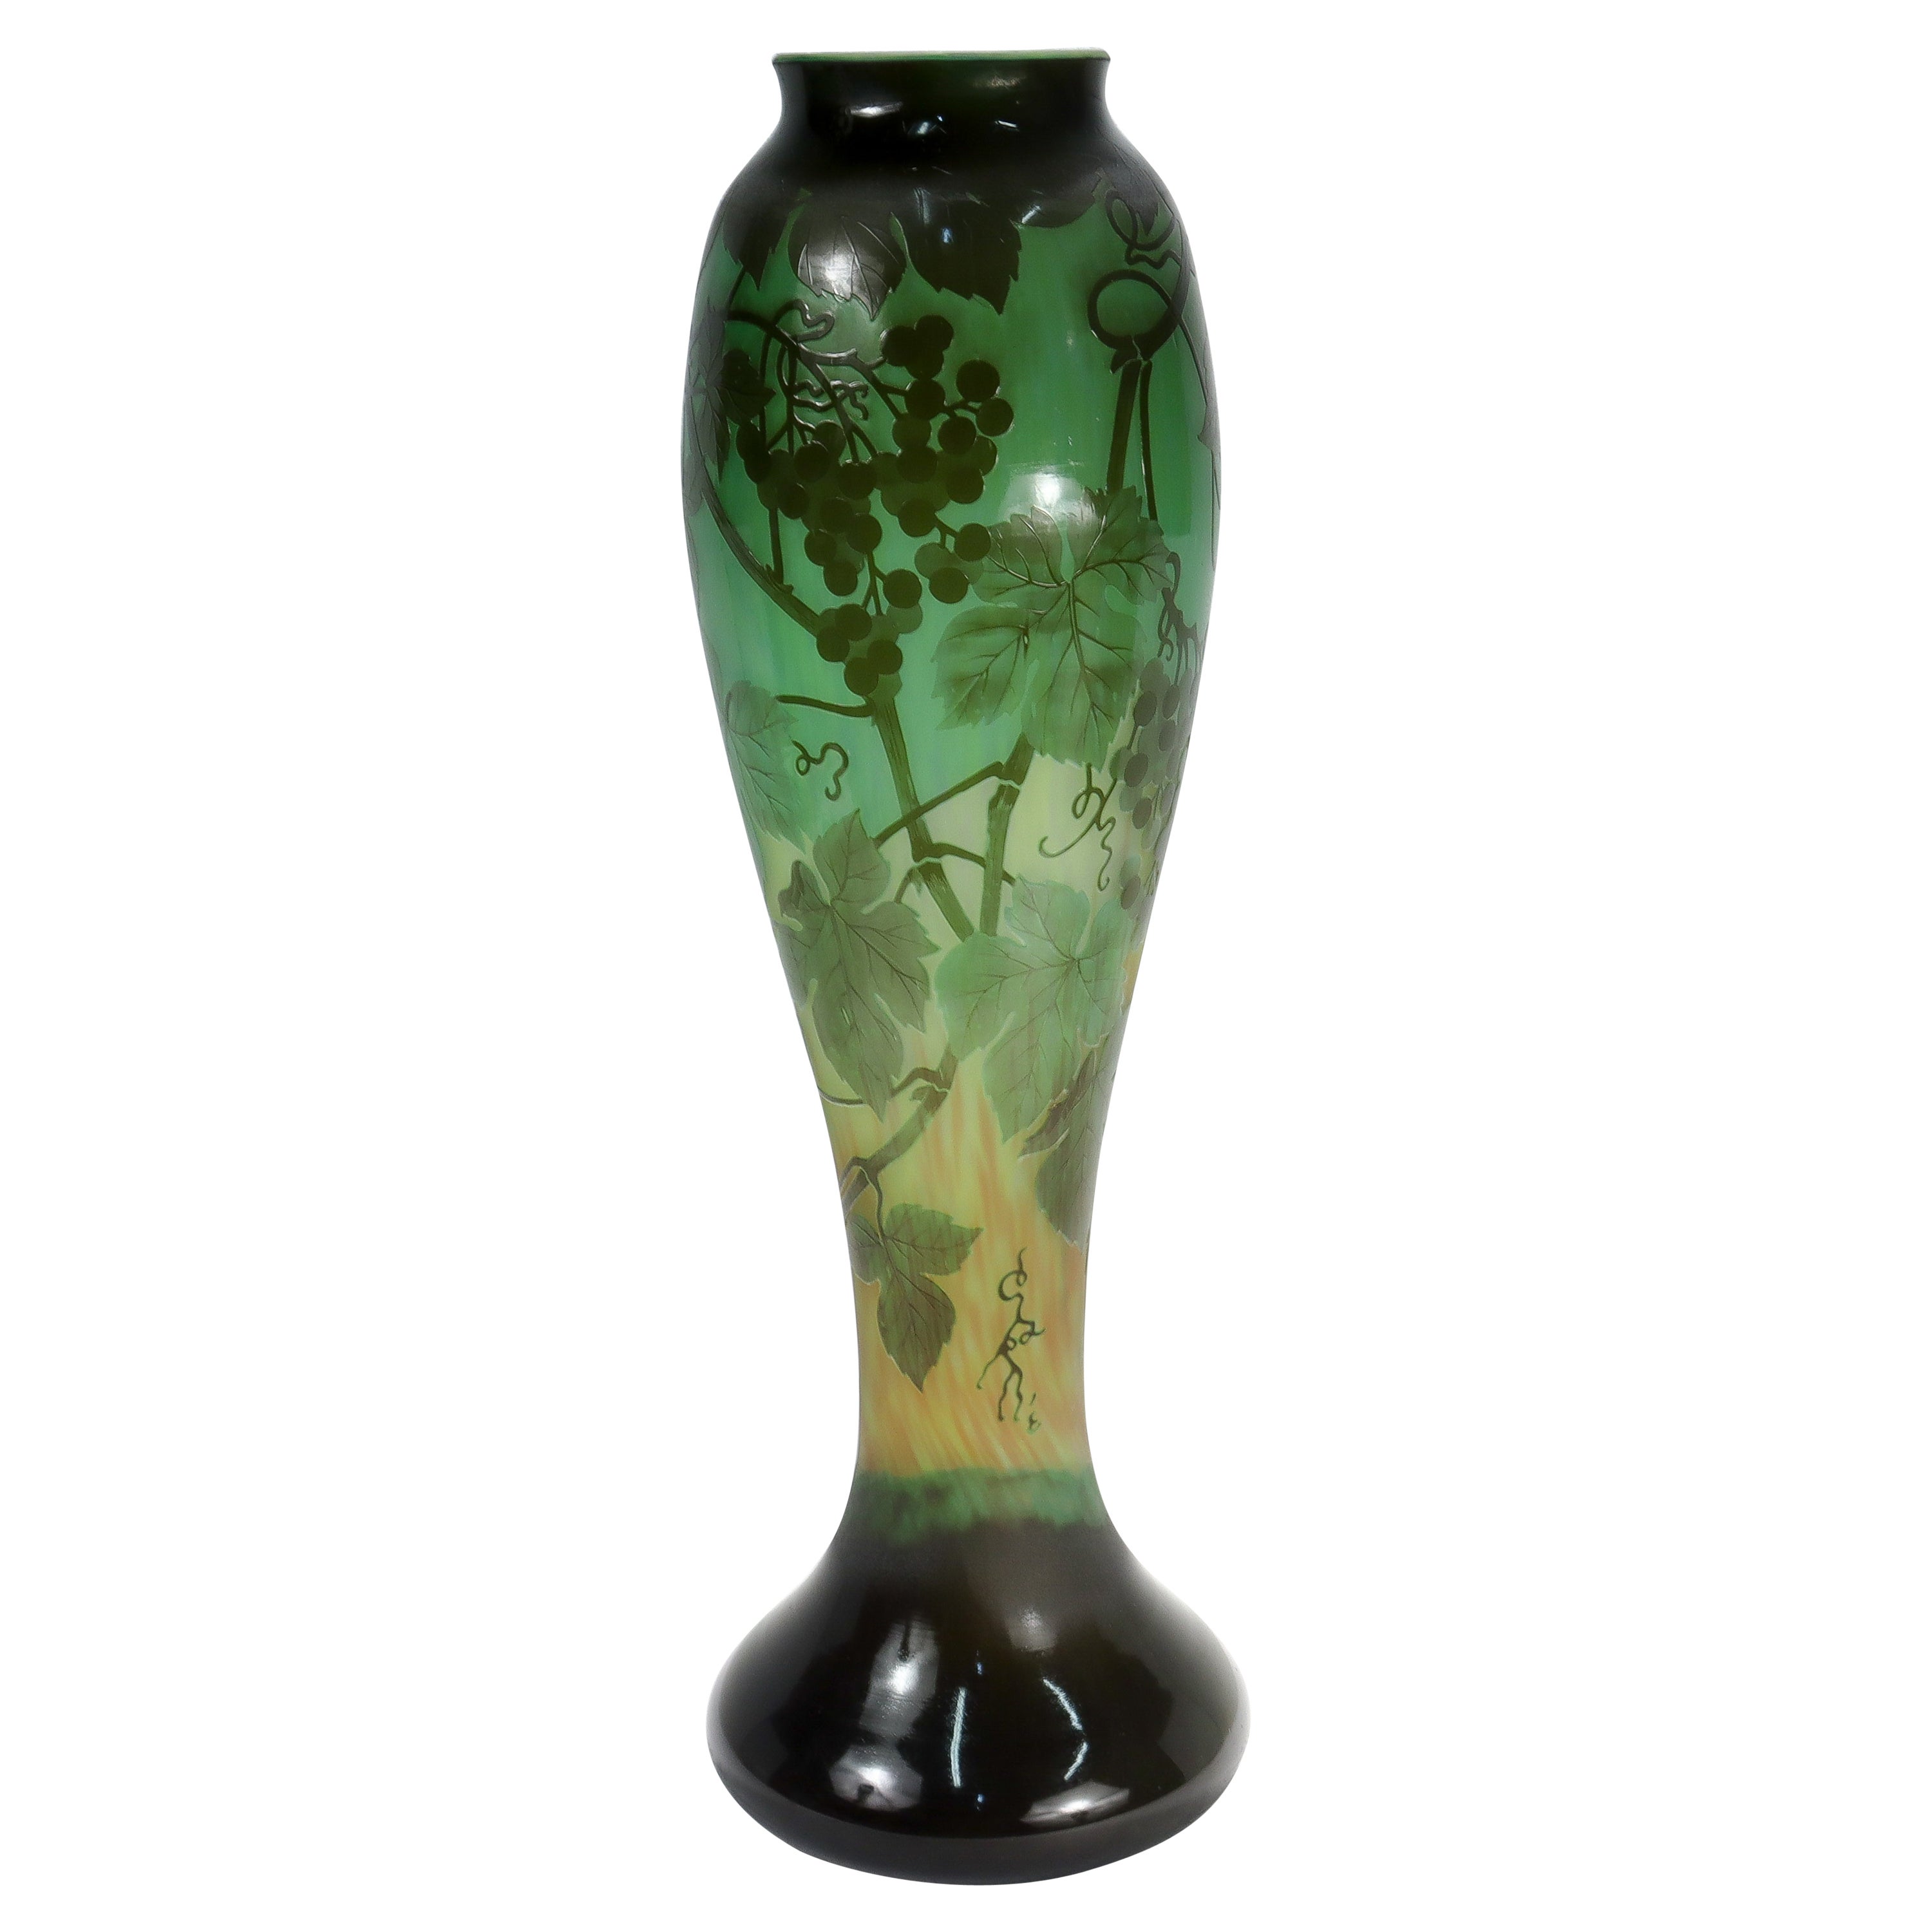 Très grand vase en verre d'art ancien signé Gallé, Art Nouveau français, camée vert.